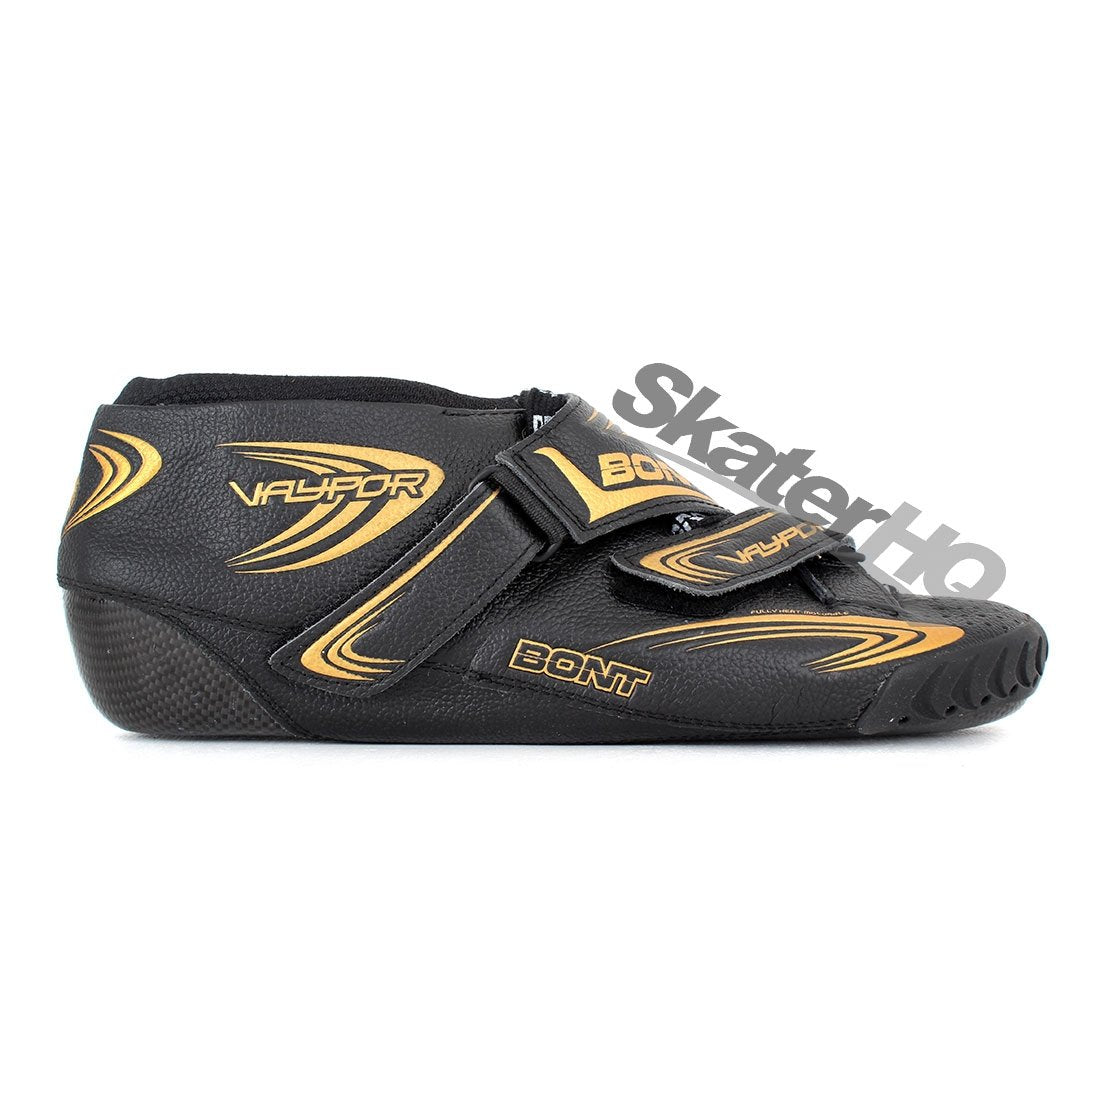 Bont Vaypor Carbon Leather Boot Black/Gold - 4US EU36 23.6cm Roller Skate Boots